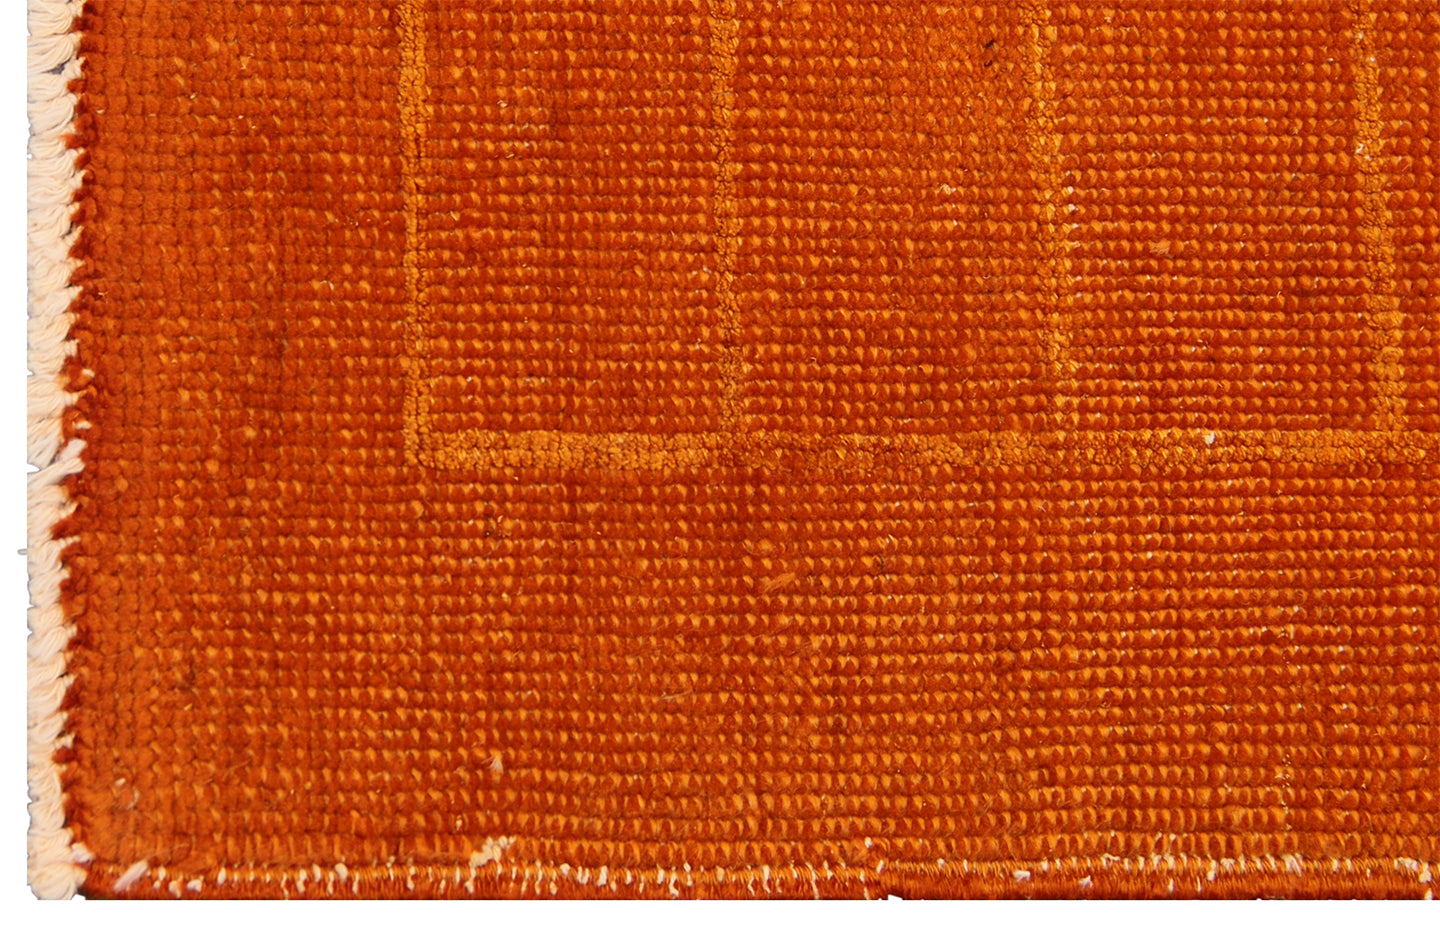 7'x11' Orange Geometric Ariana Overdyed Rug